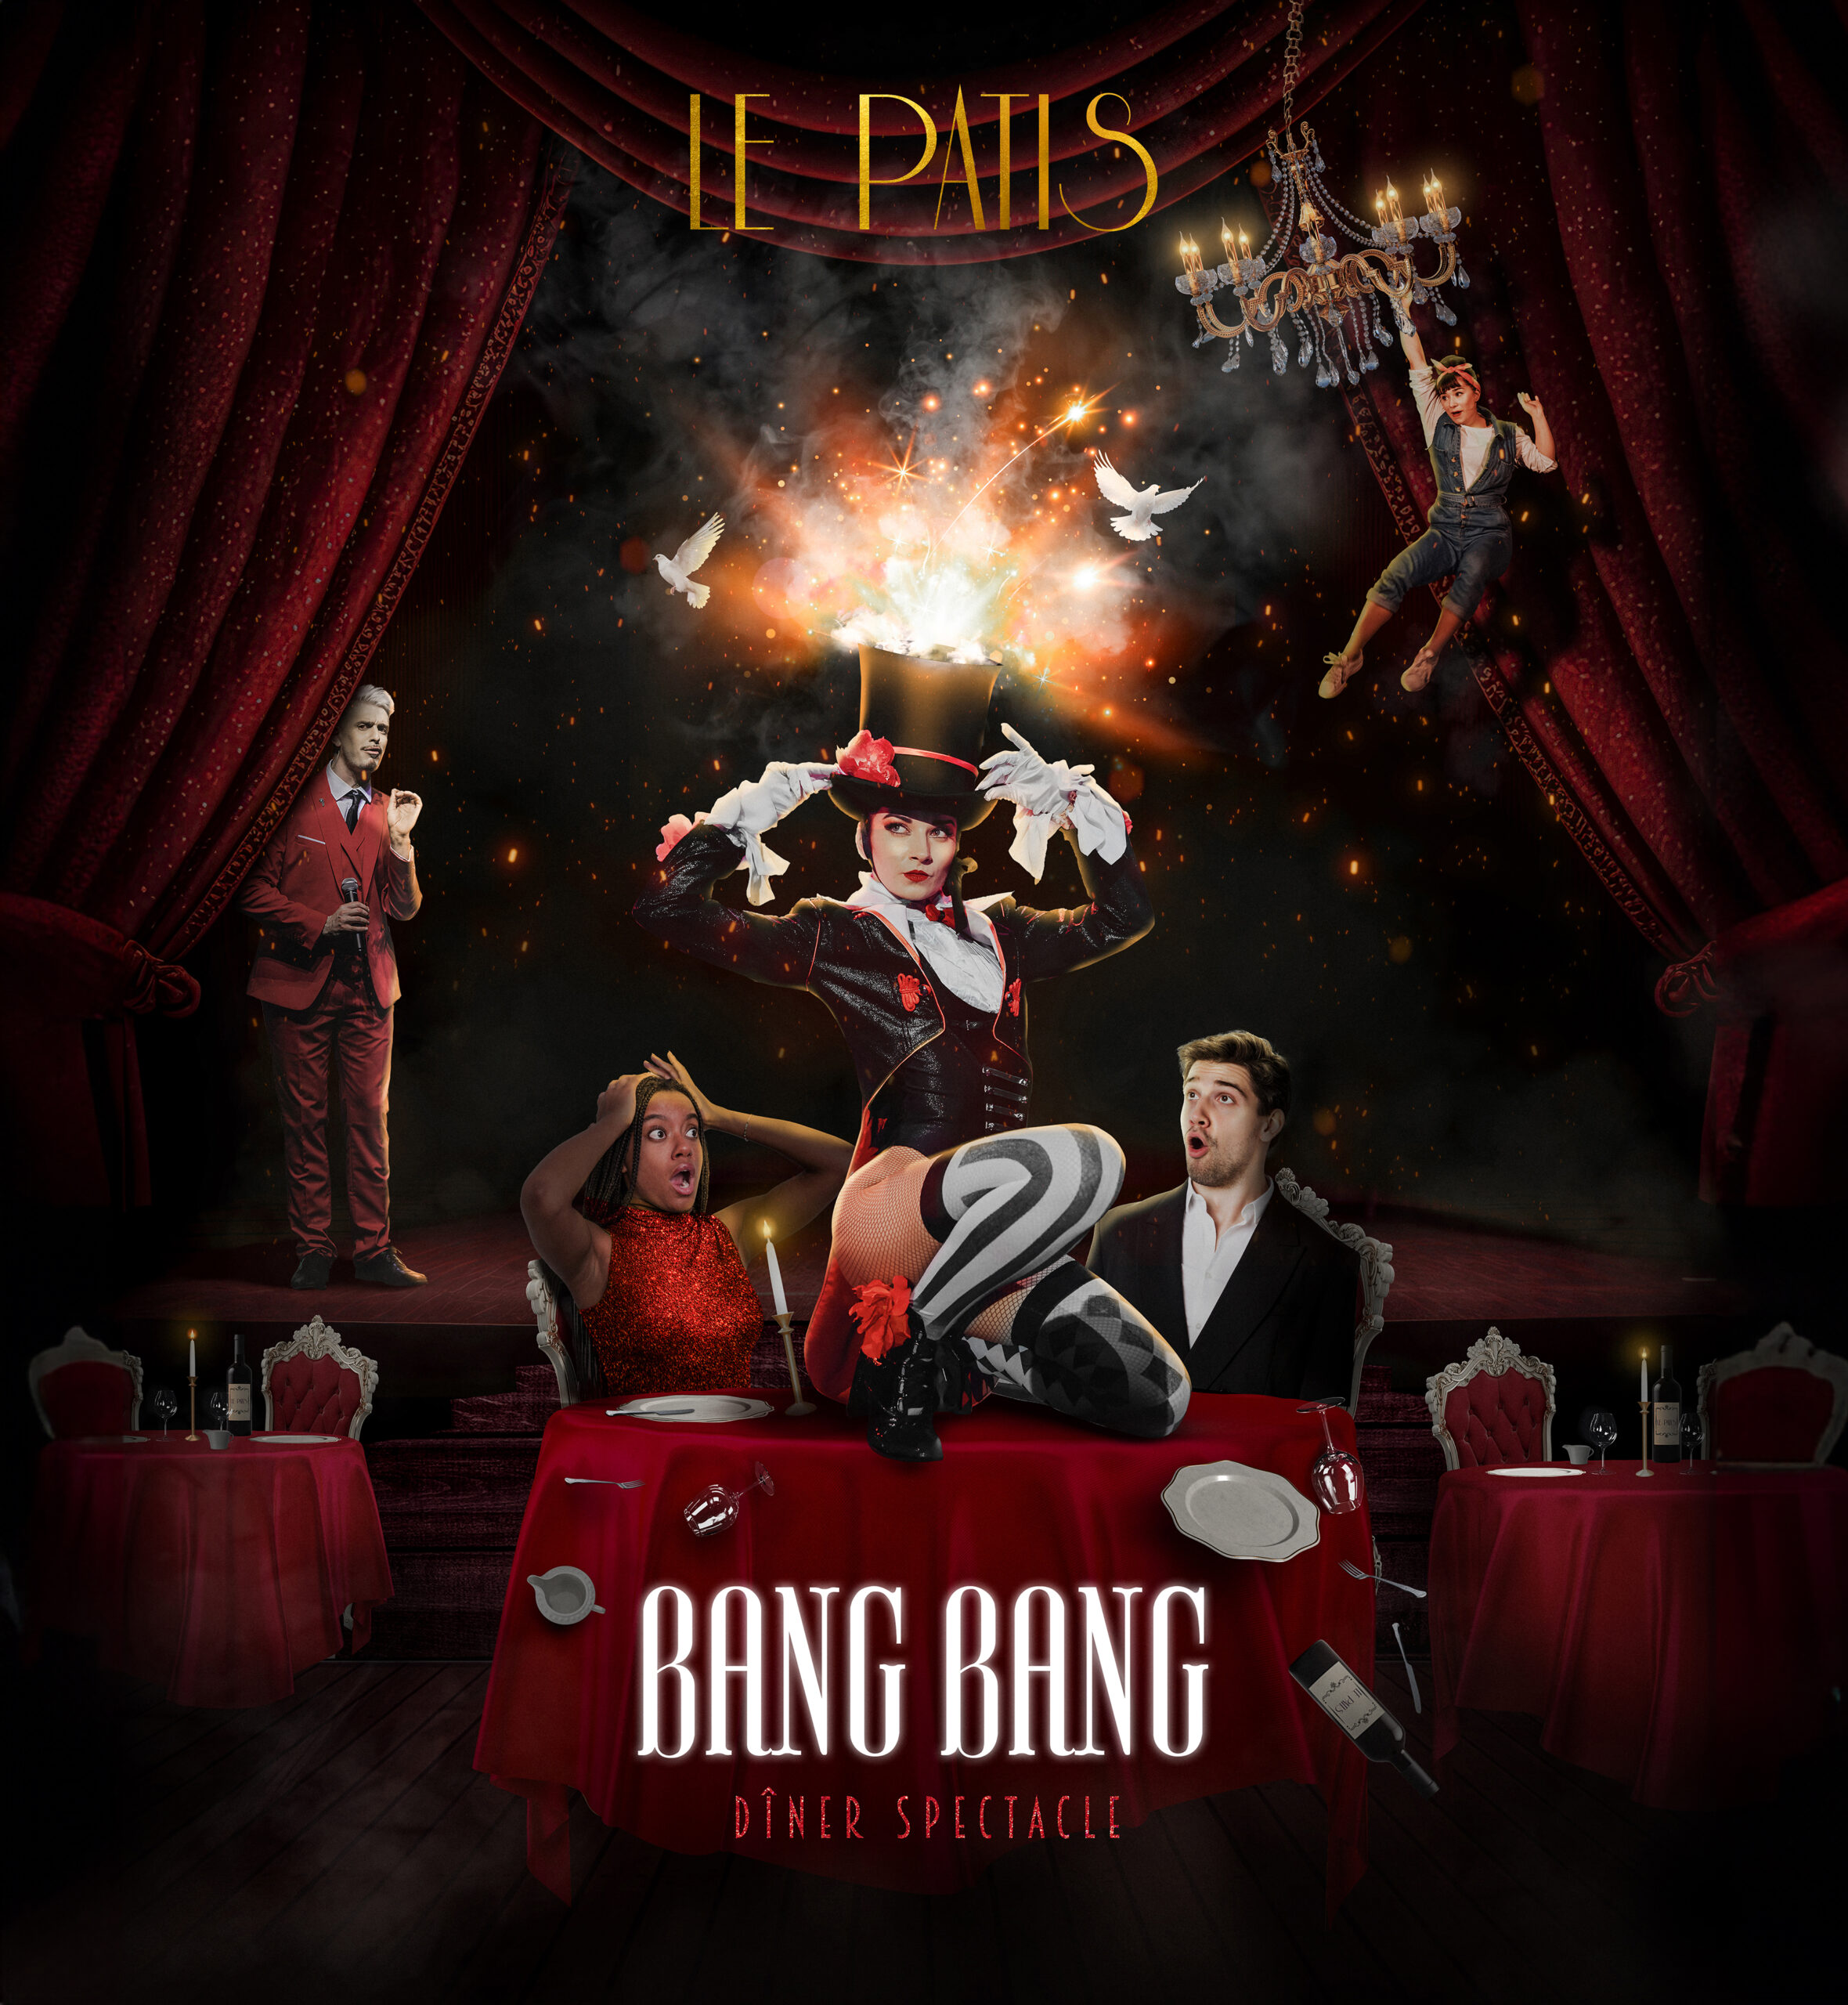 On peut voir l'affiche de Bang Bang, un spectacle disponible en Repas au Cabaret le Patis. 